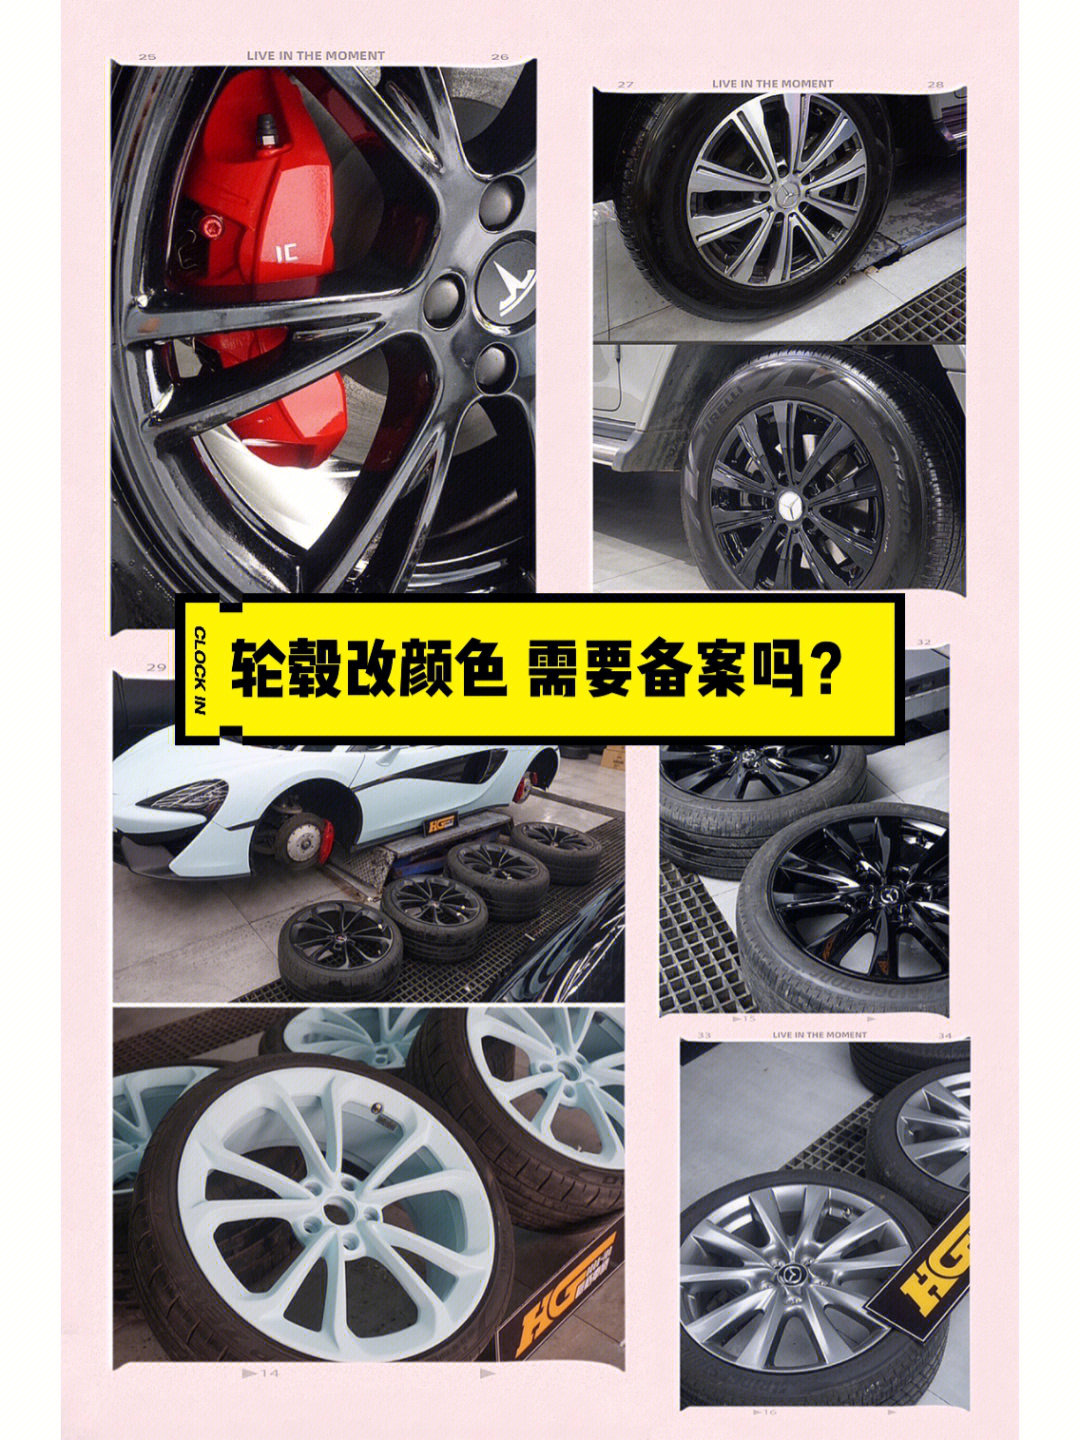 那么,如果是给汽车的轮毂改颜色需要备案吗?